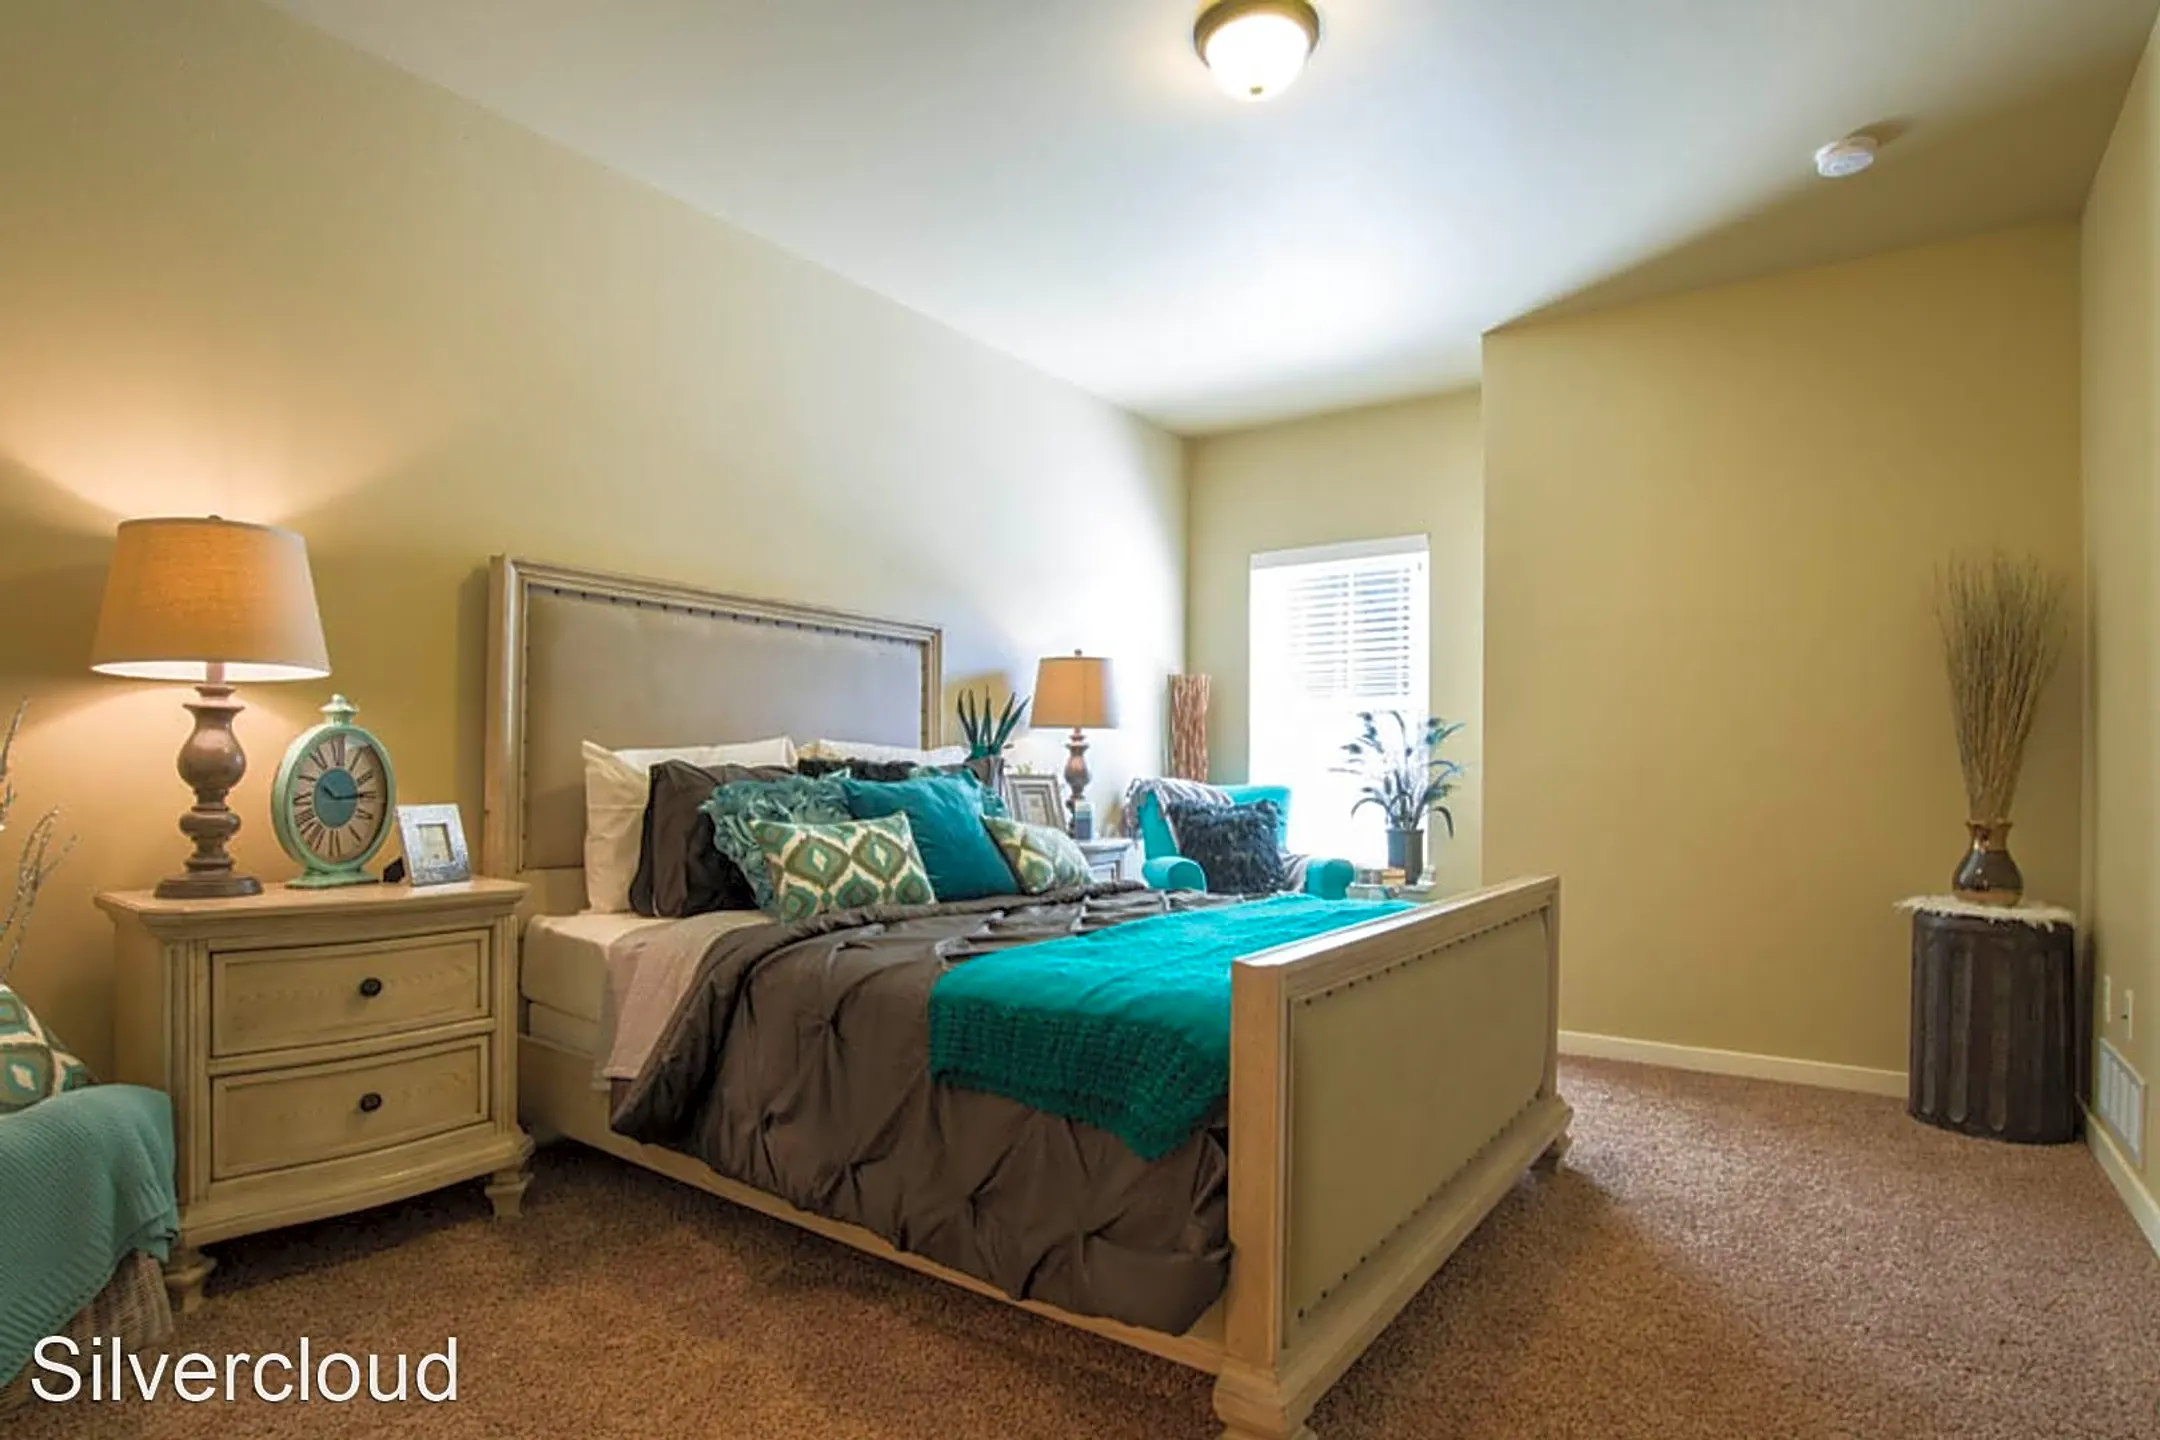 Bedroom - Retreat at Silvercloud - Boise, ID